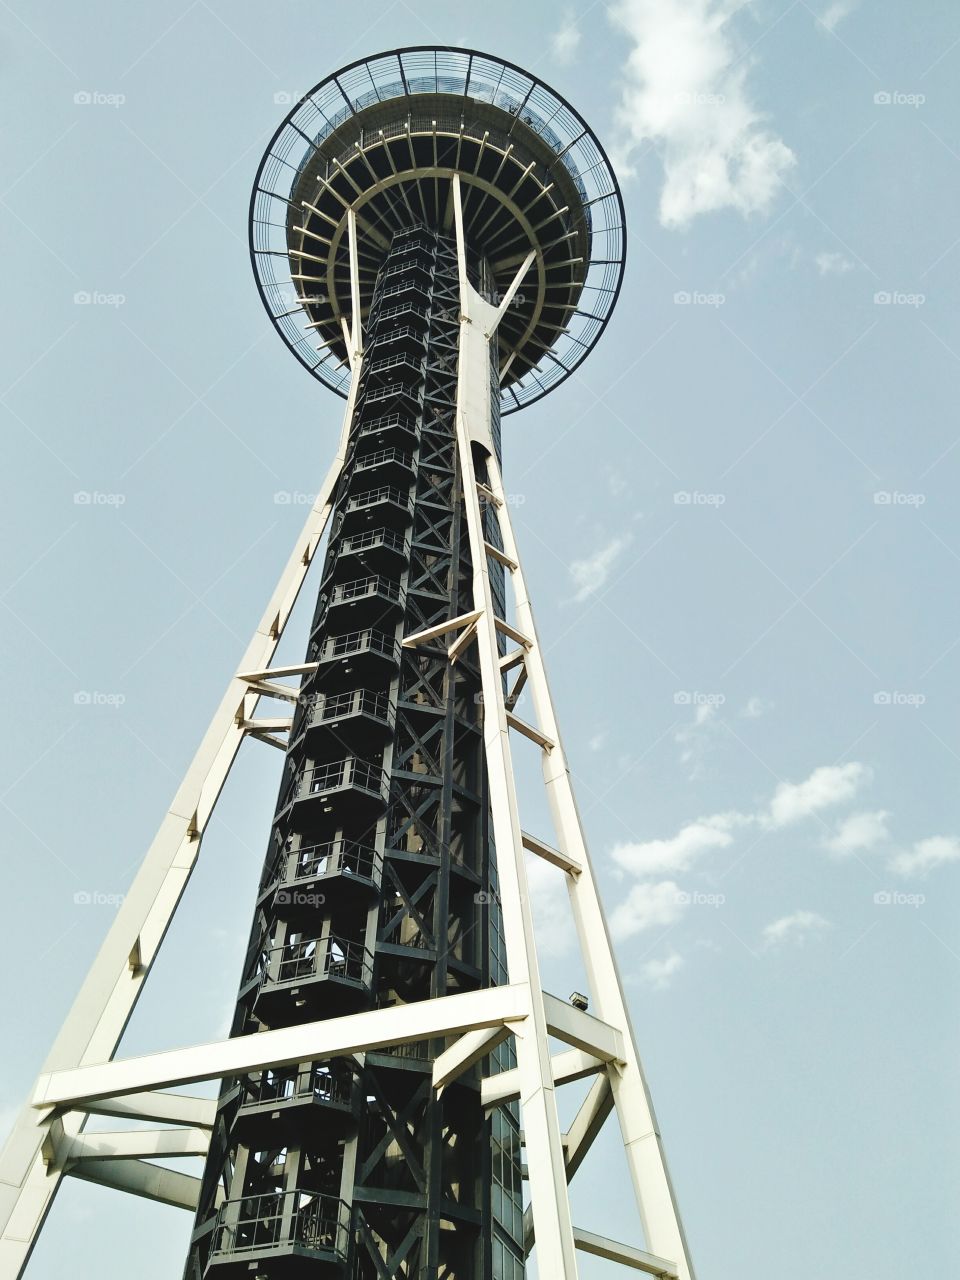 Jindal tower